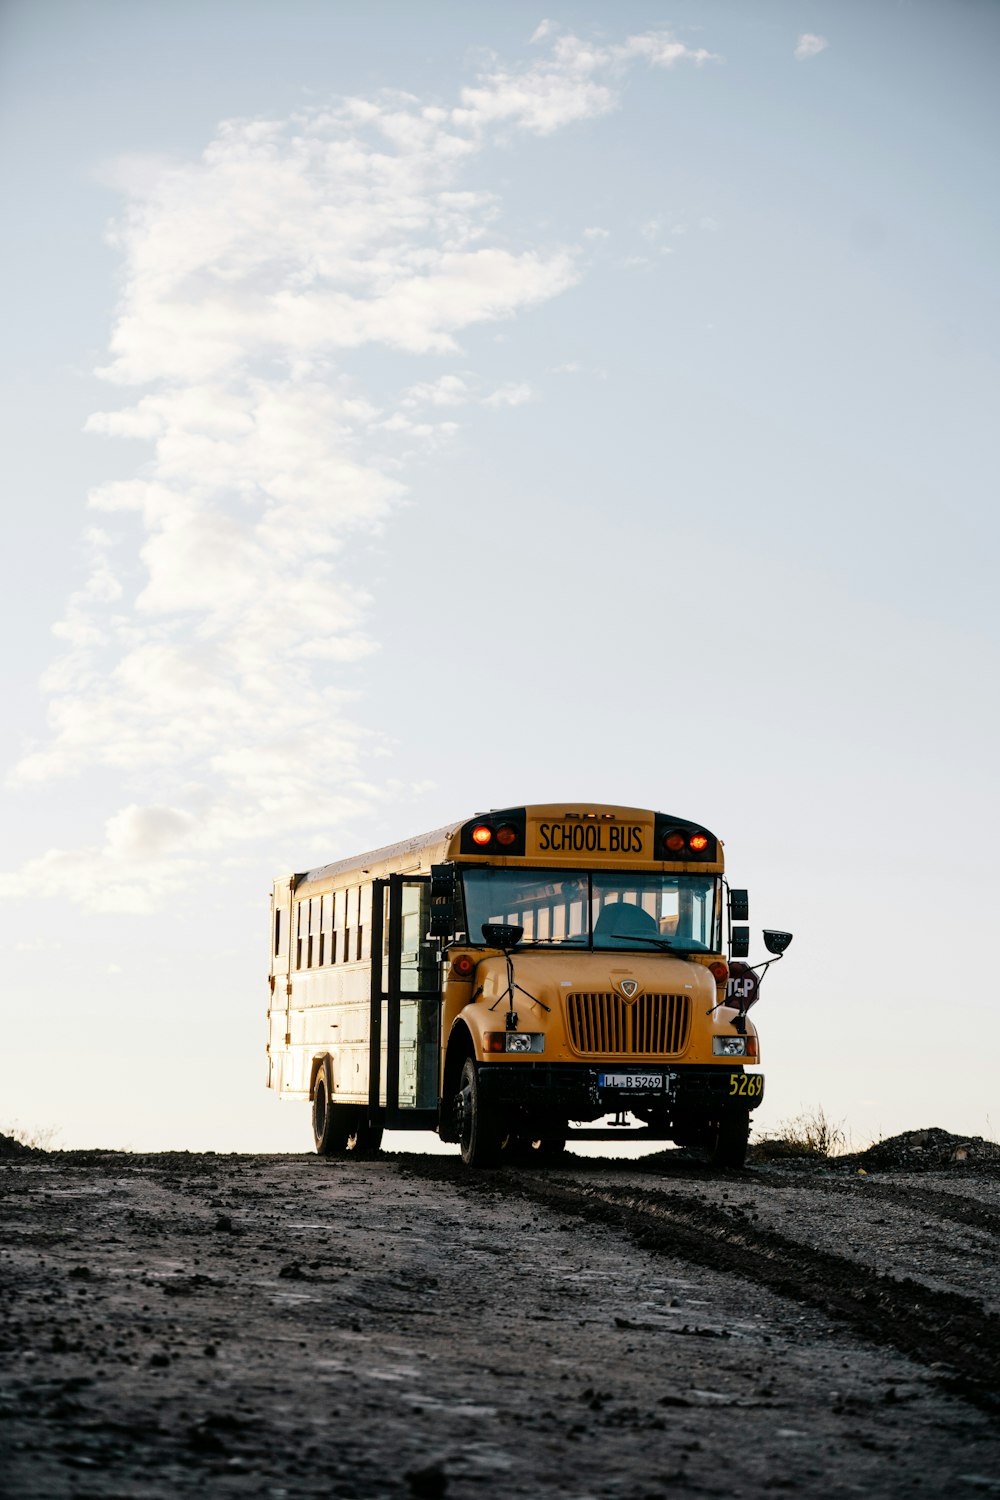 Gelber Schulbus tagsüber auf schneebedecktem Boden unter weißem, bewölktem Himmel